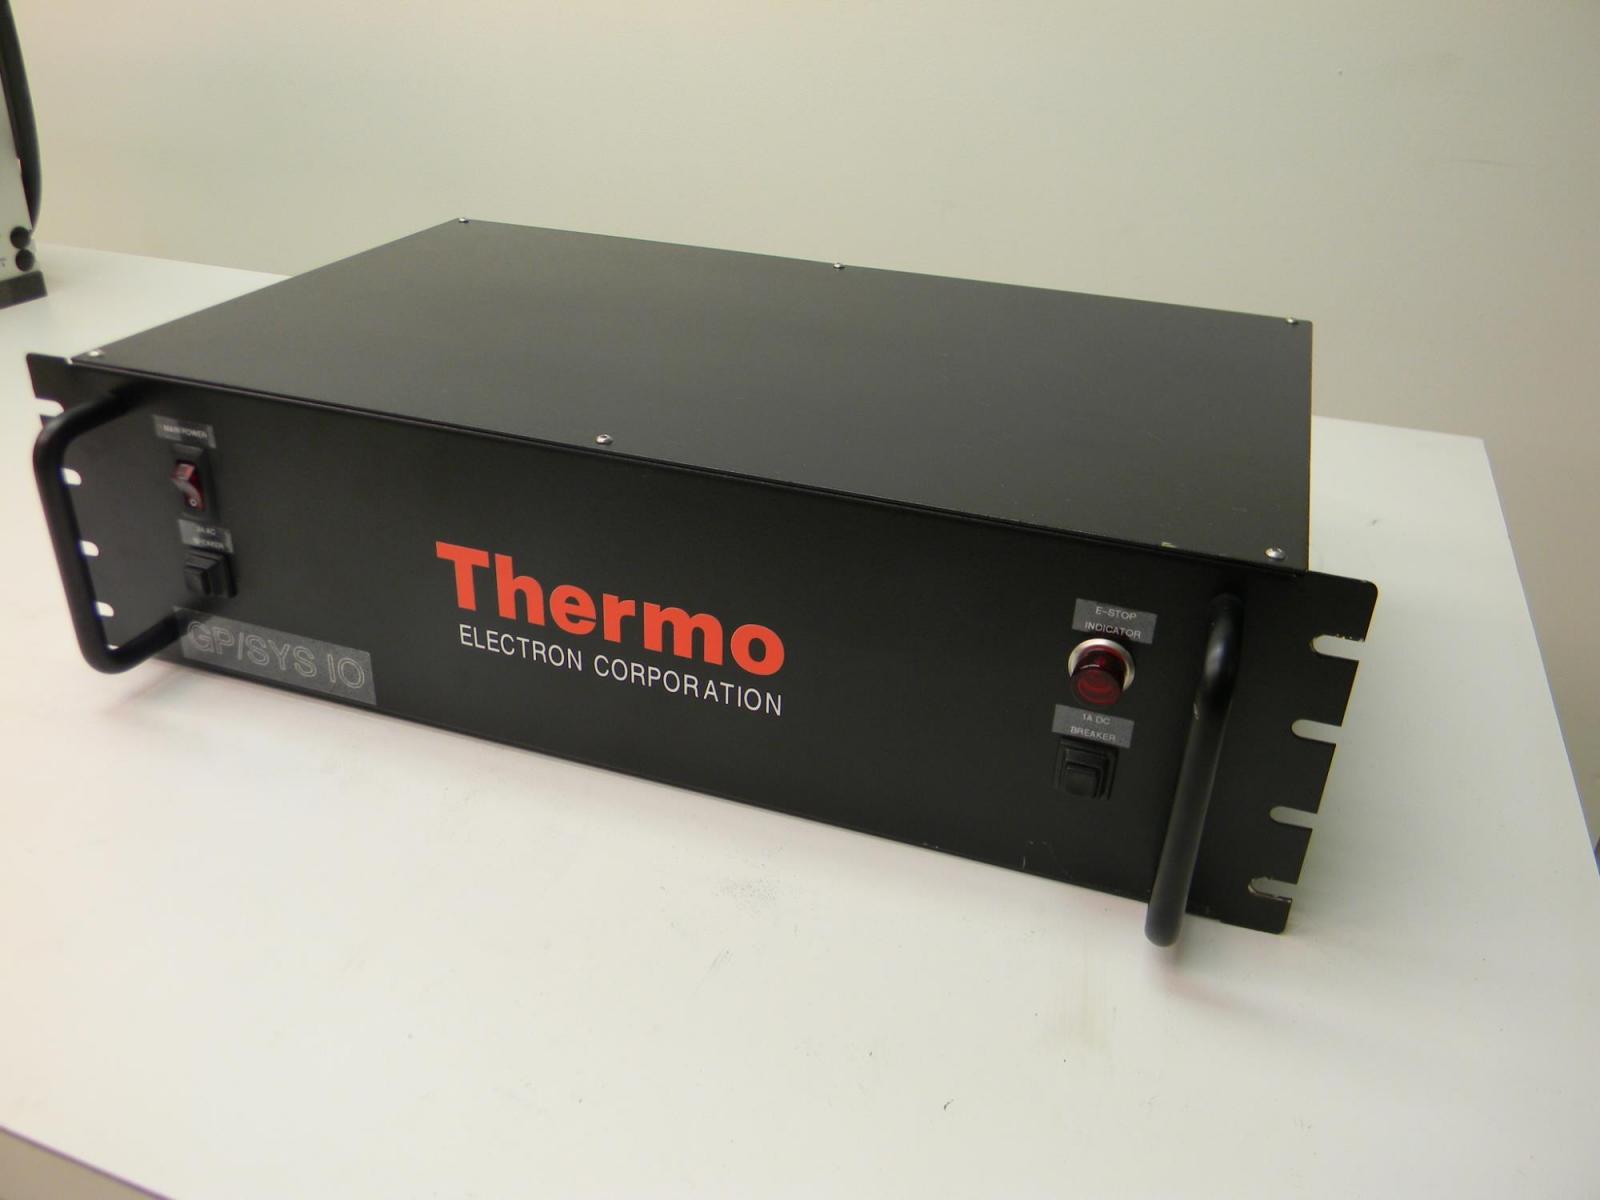 图为 已使用的 THERMO ELECTRON / THERMO FISHER SCIENTIFIC GP/SYS 10 待售